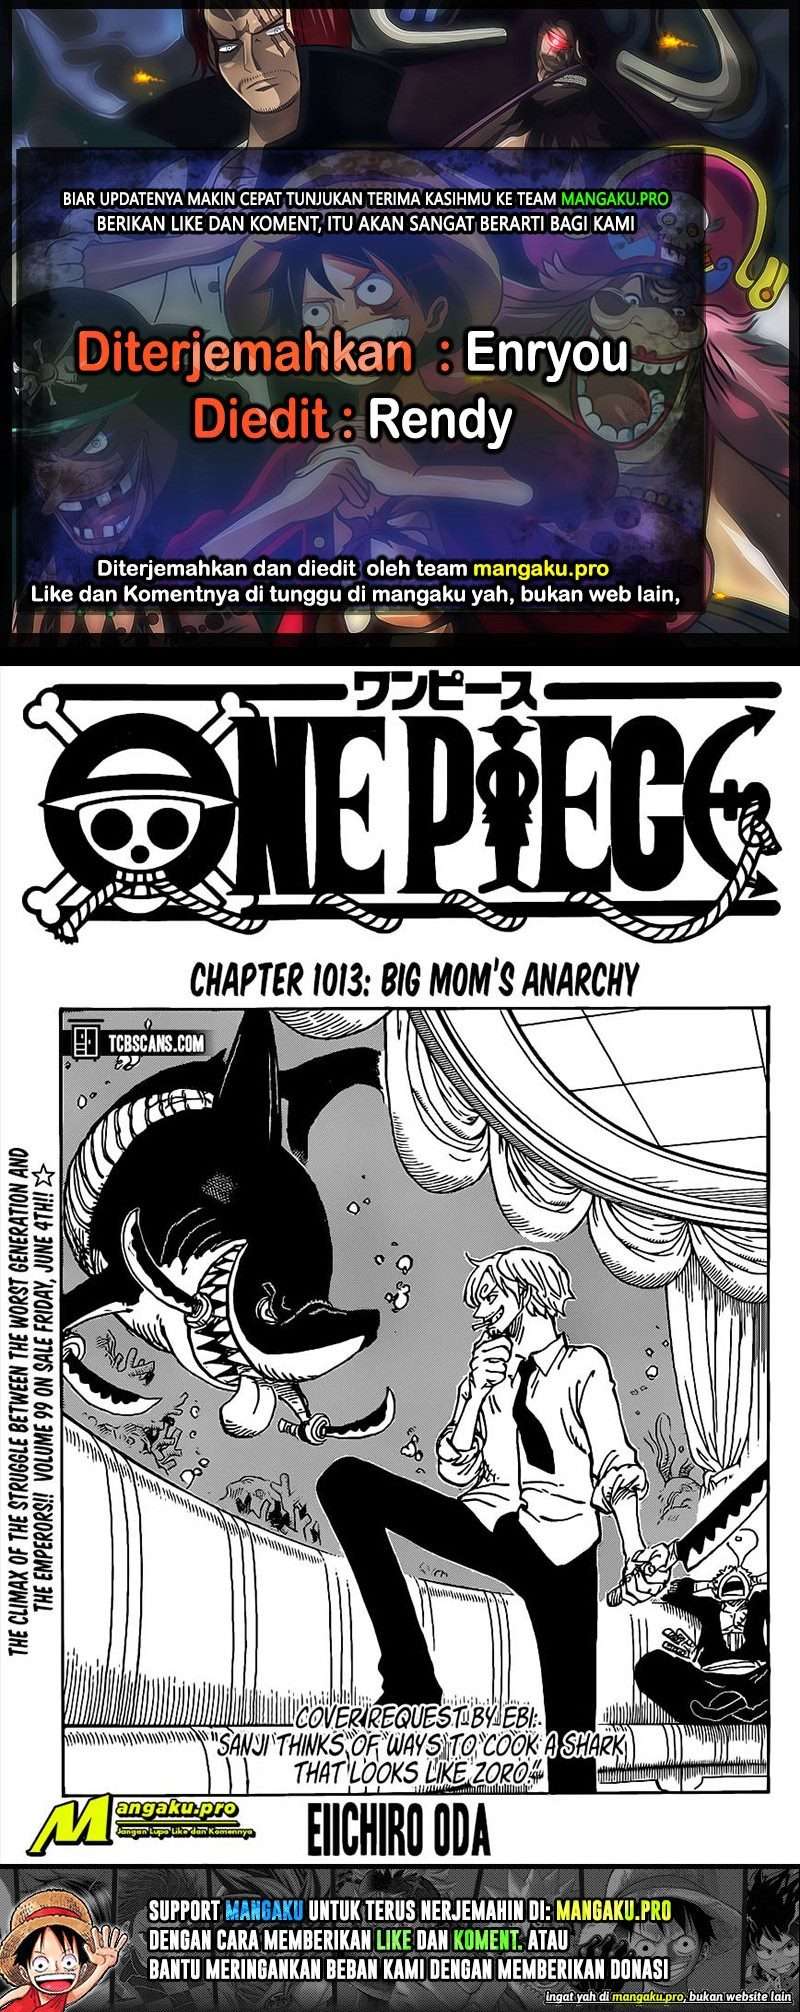 One Piece Chapter 1013 Hd Mangakyo